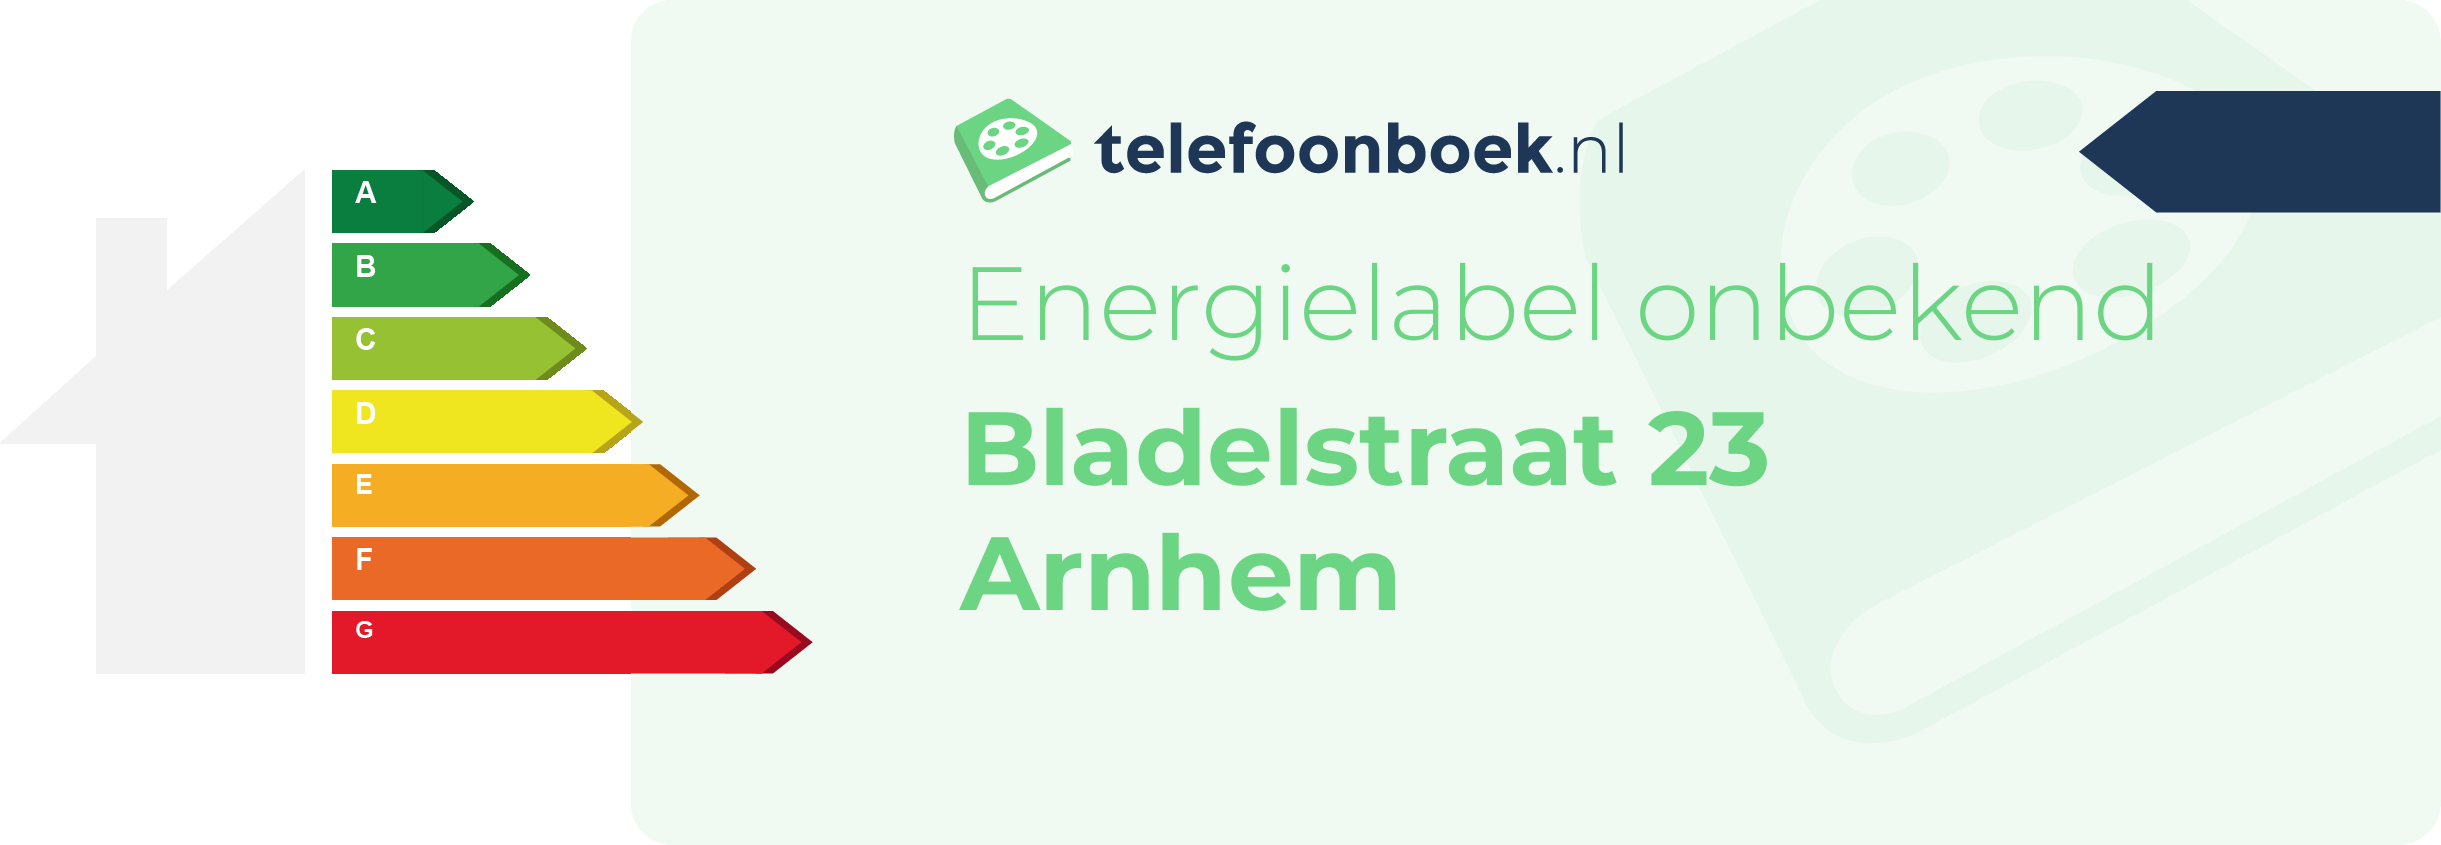 Energielabel Bladelstraat 23 Arnhem